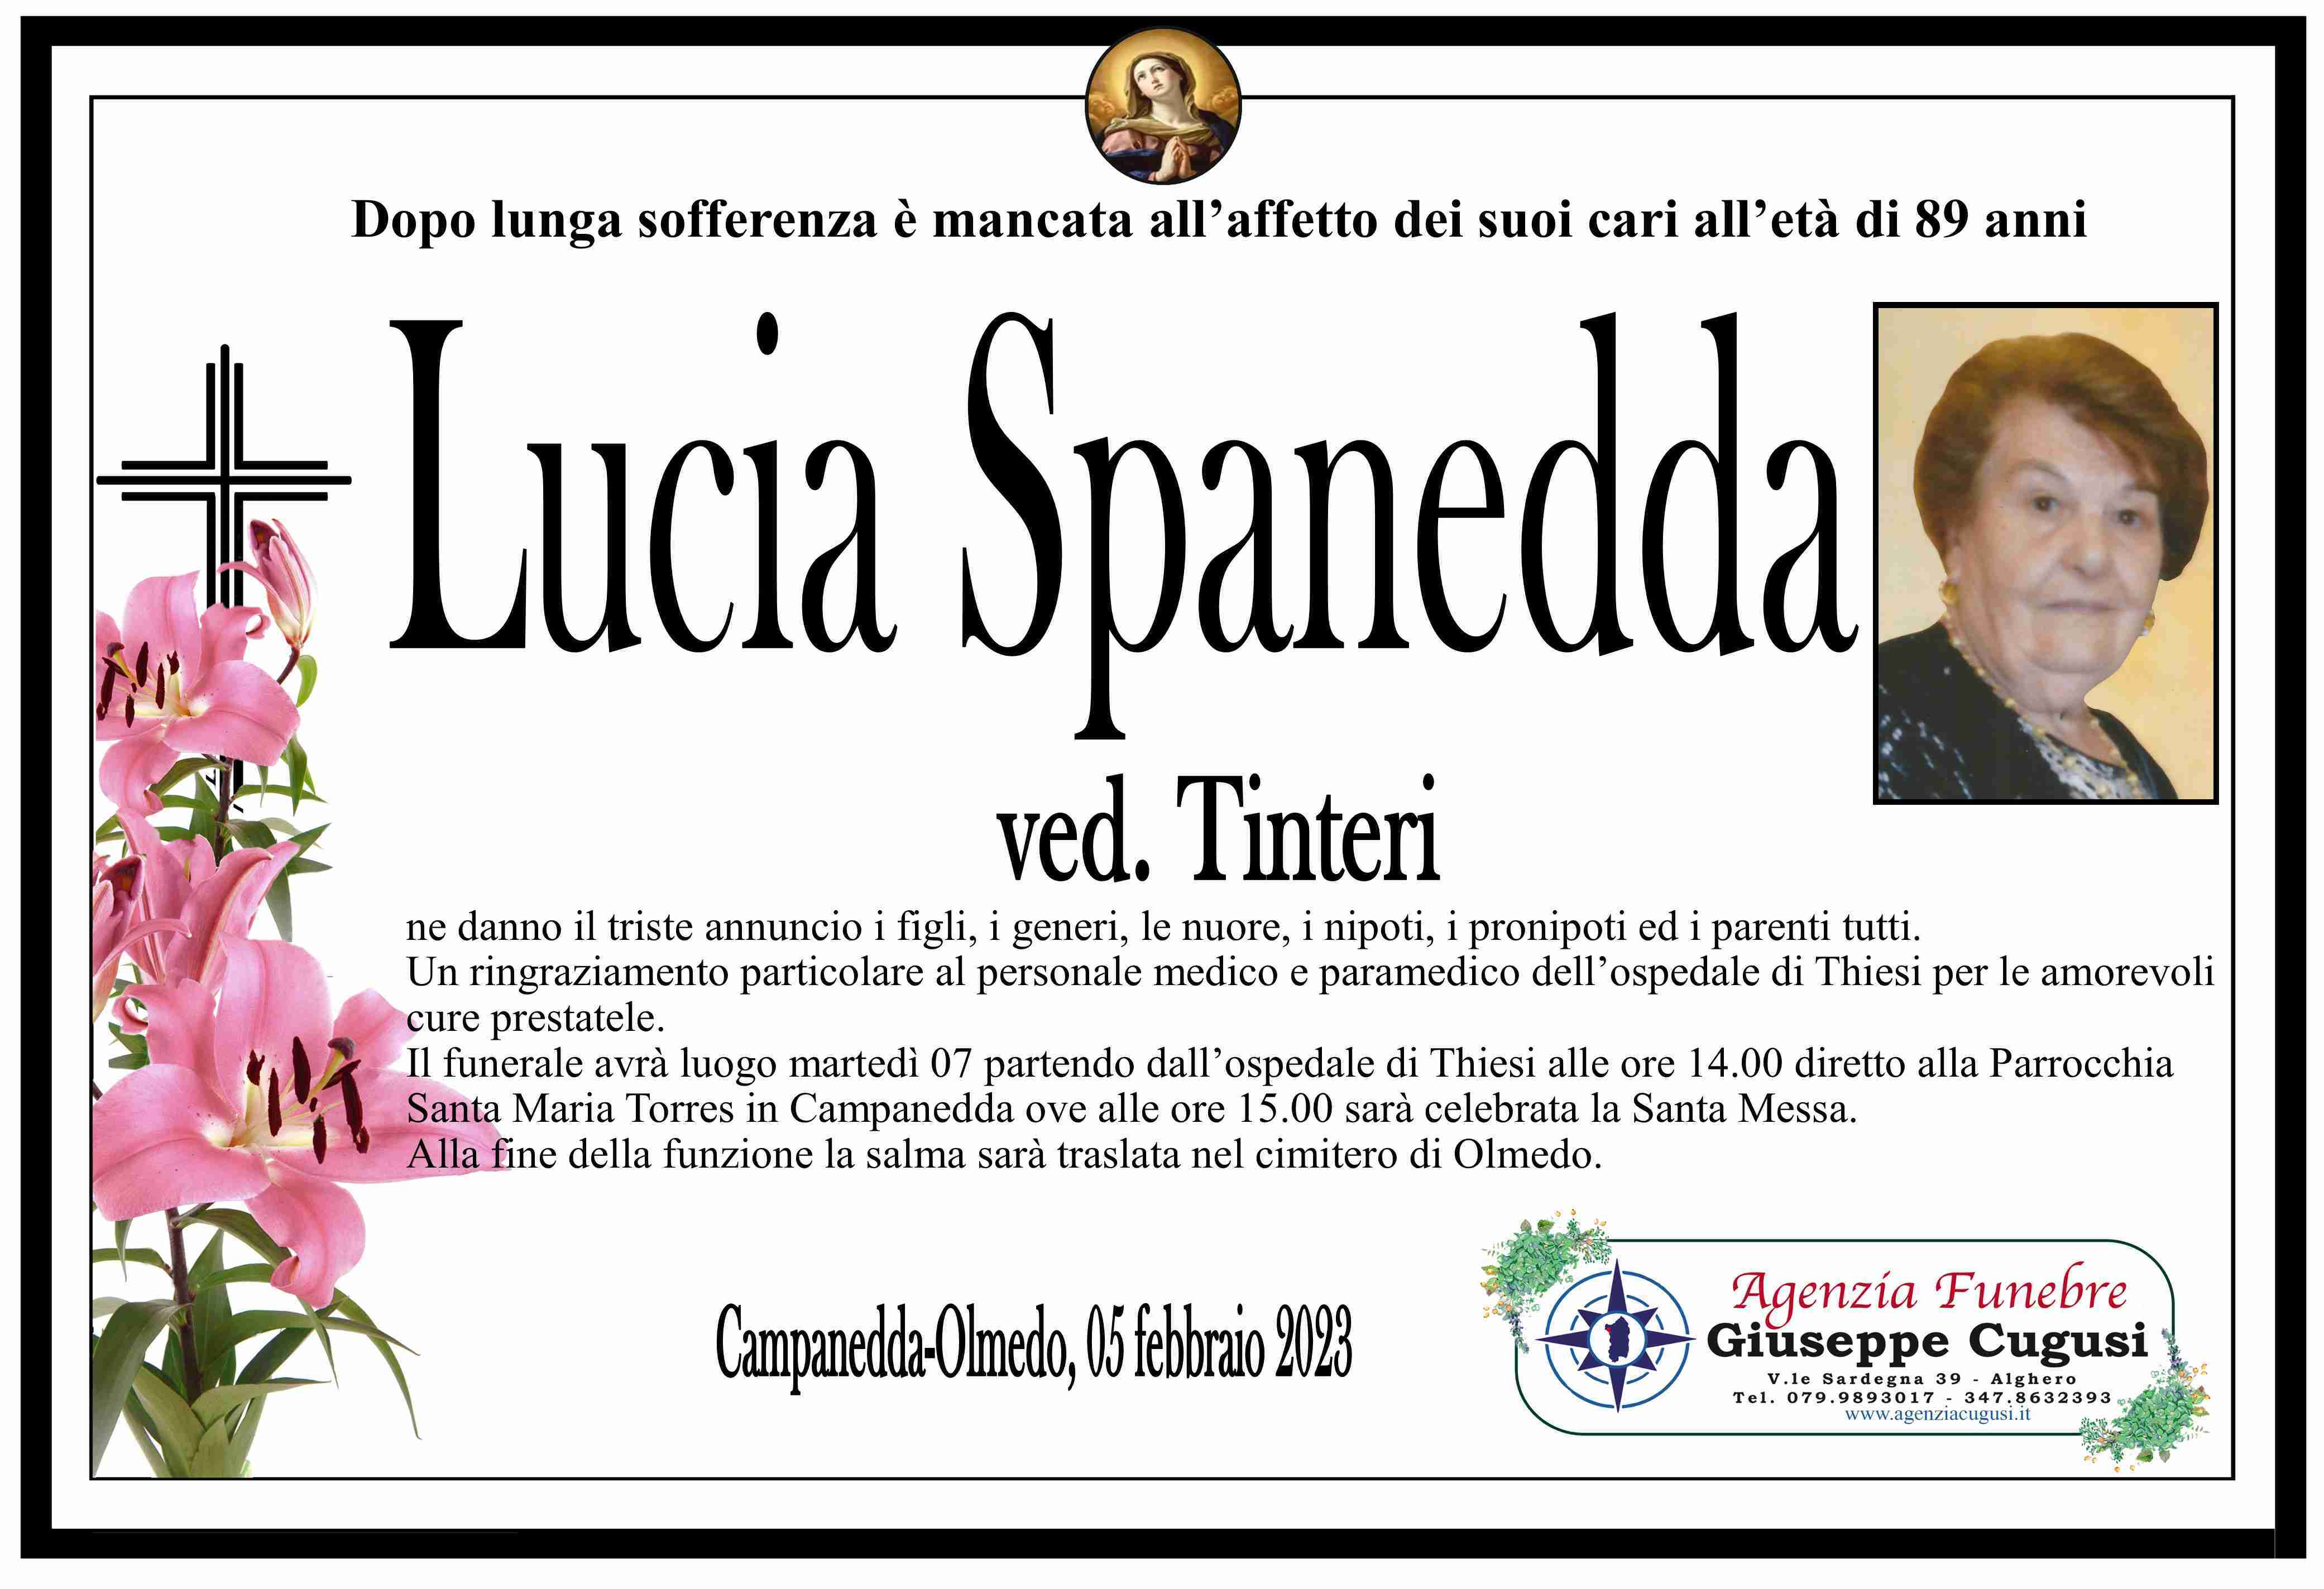 Lucia Spanedda